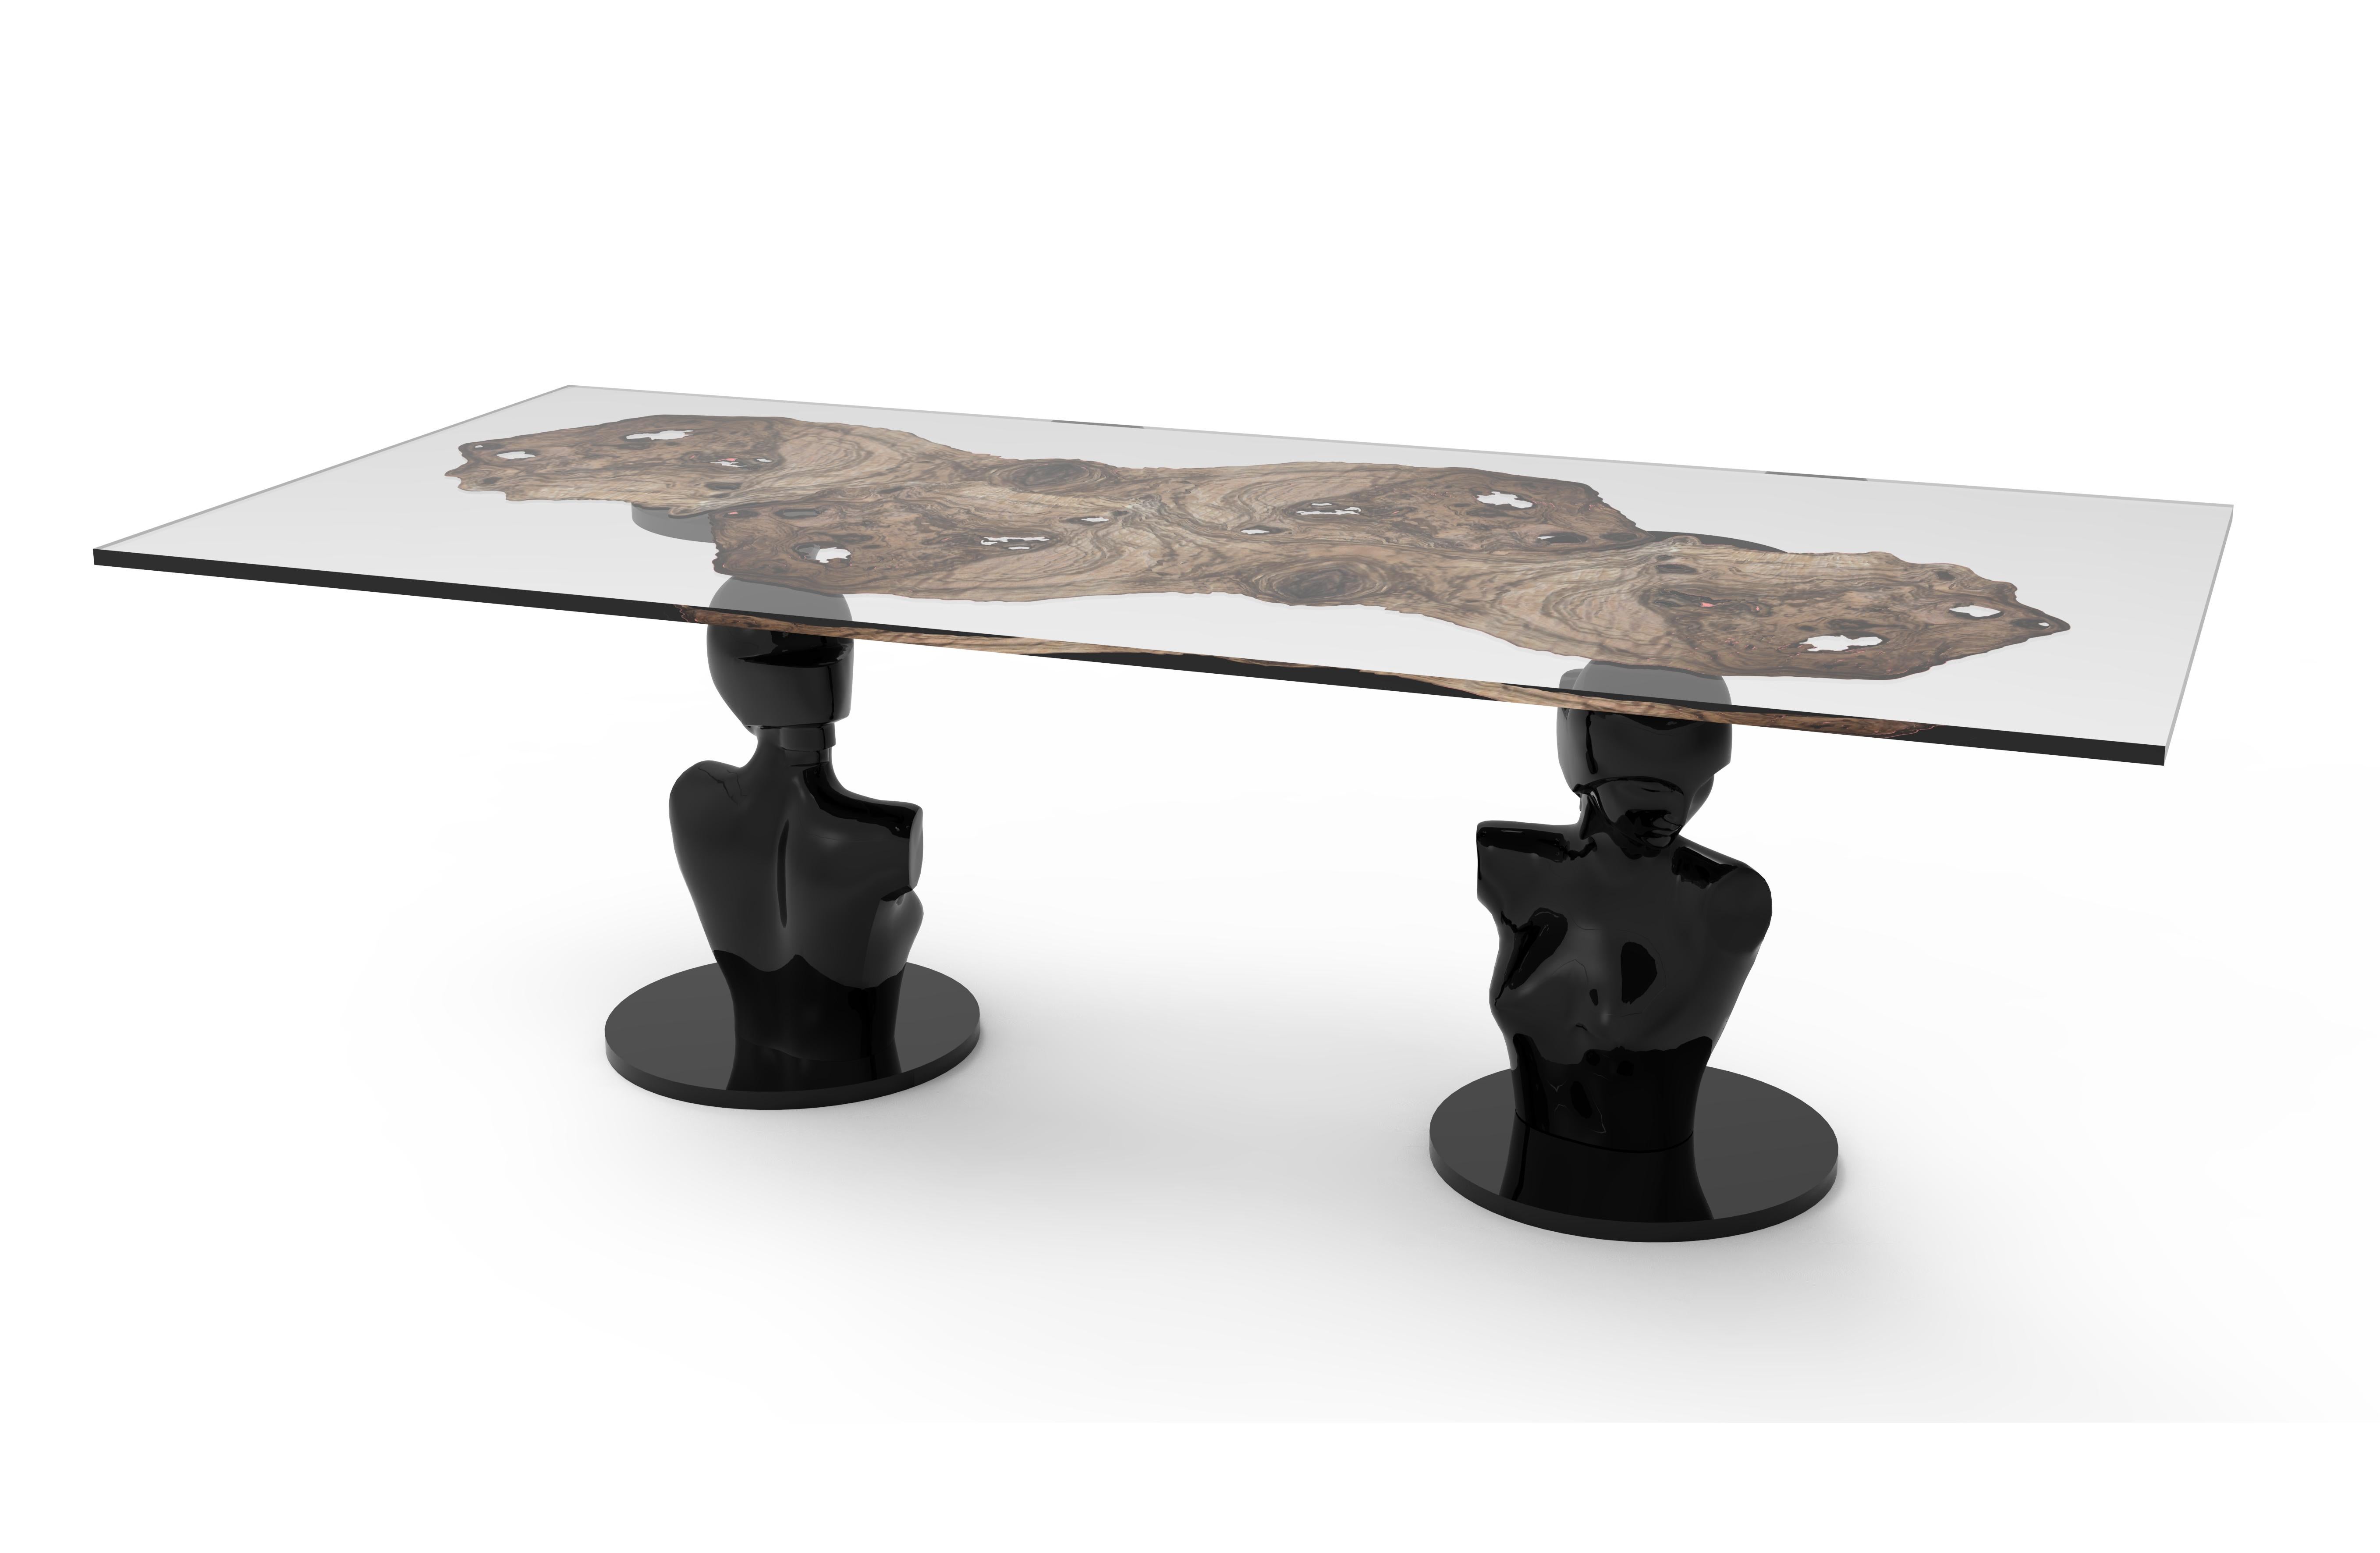 Lorsky est une table inspirée de l'esthétique Art déco des années 1920 et 1930. La base en bois sculpté représente deux sculptures d'une femme guerrière de Boris Lovet Lorski, l'un des plus importants sculpteurs de l'Art déco. La table est un